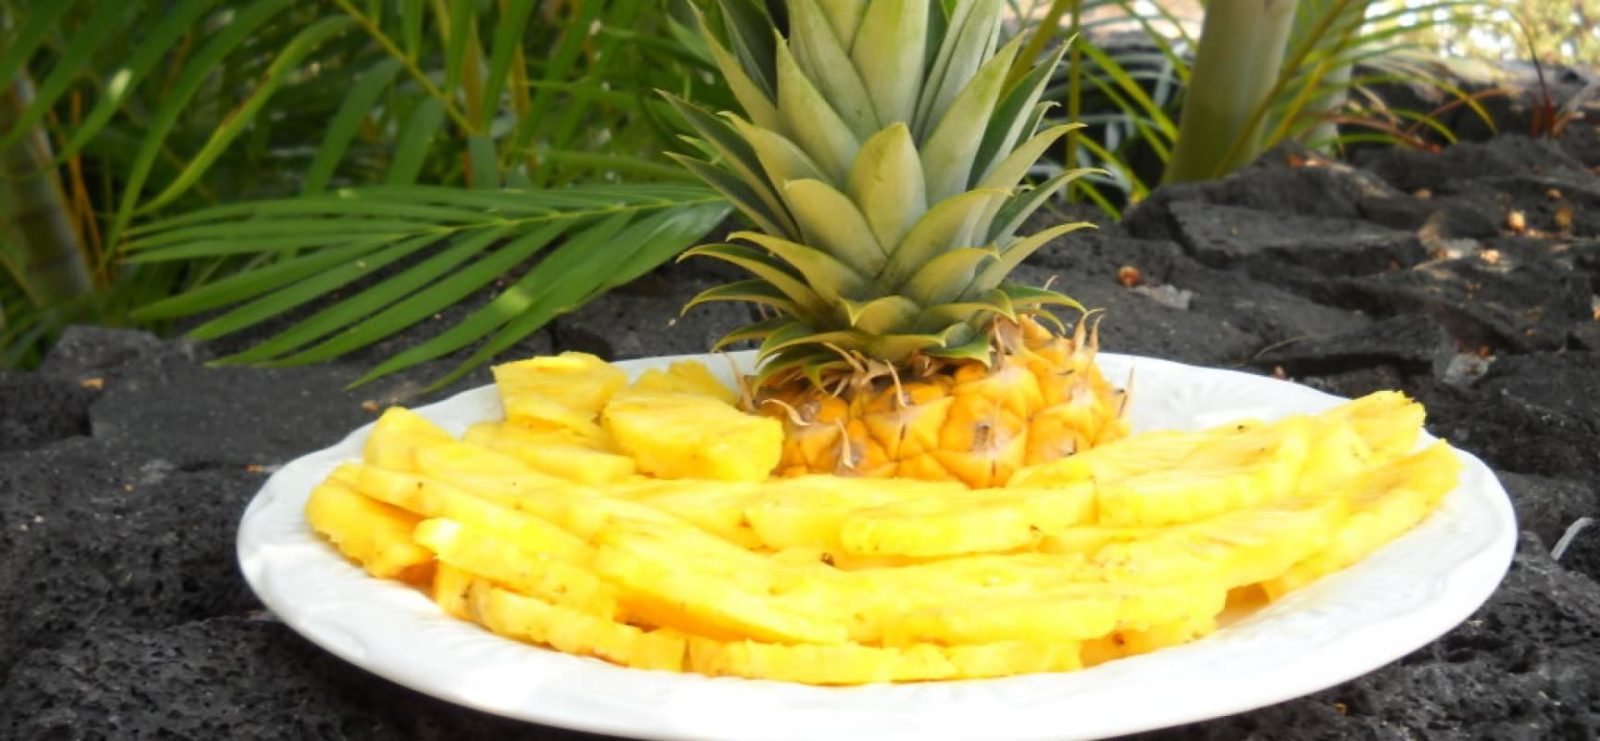 kak-pravilno-chistit-ananas (3)